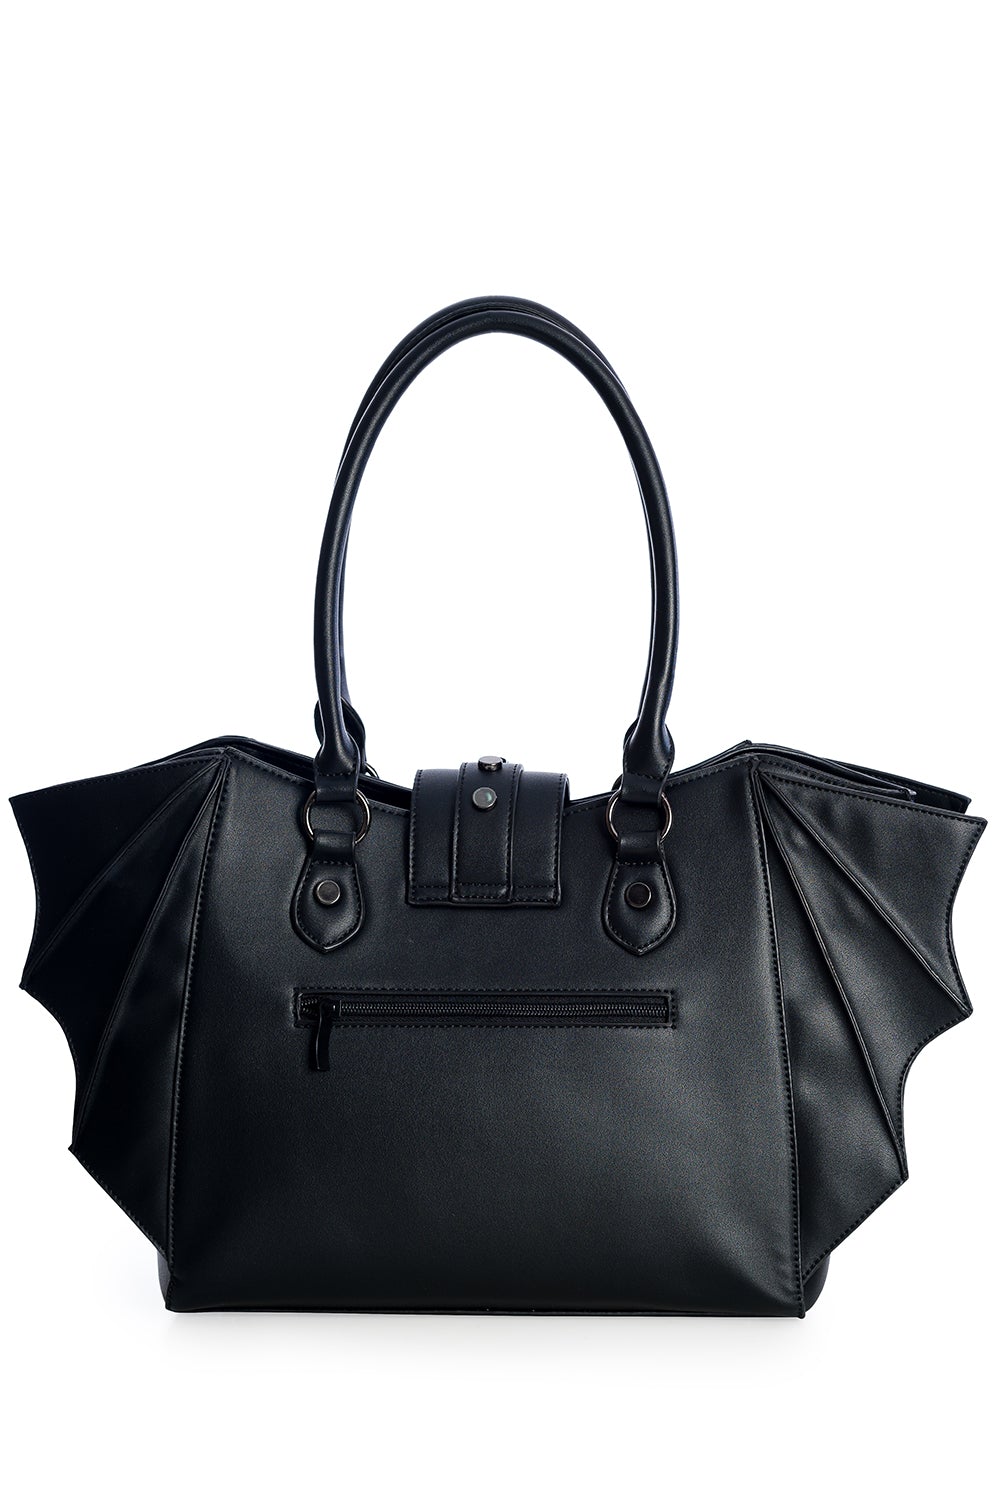 Black handbag with bat wing side details 